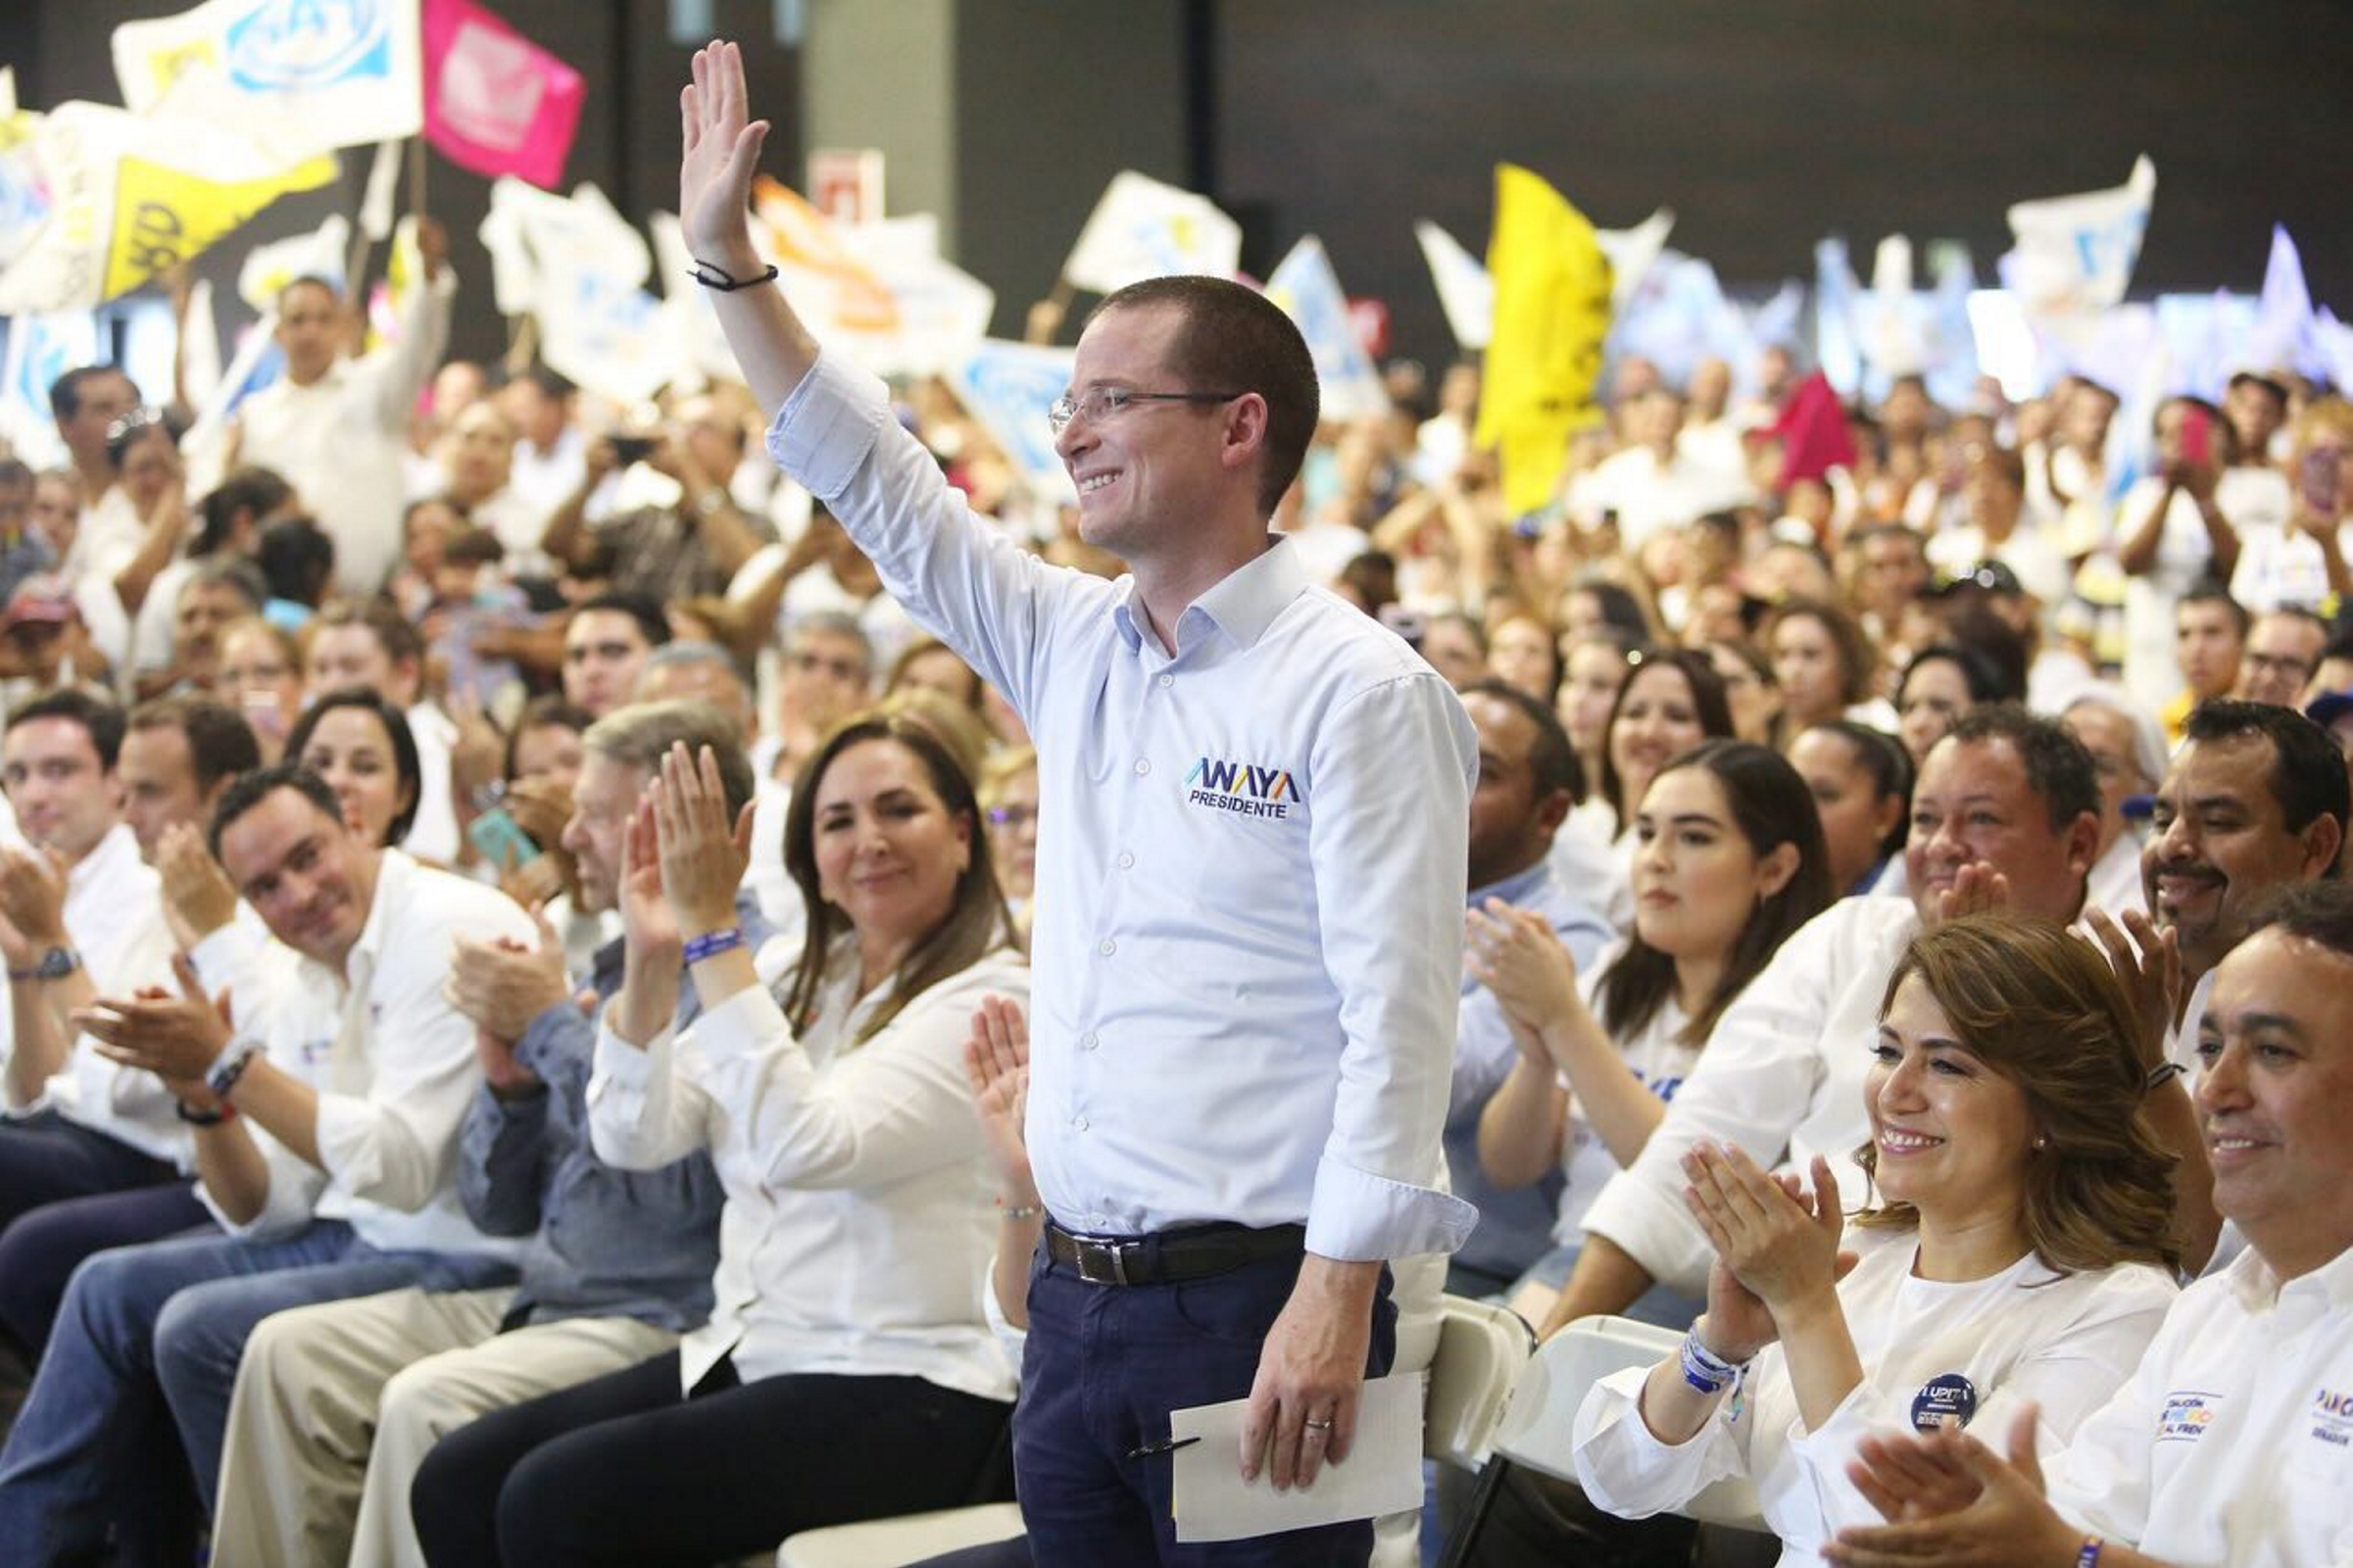 Afirma Ricardo Anaya que ganará la elección con votos, no bots